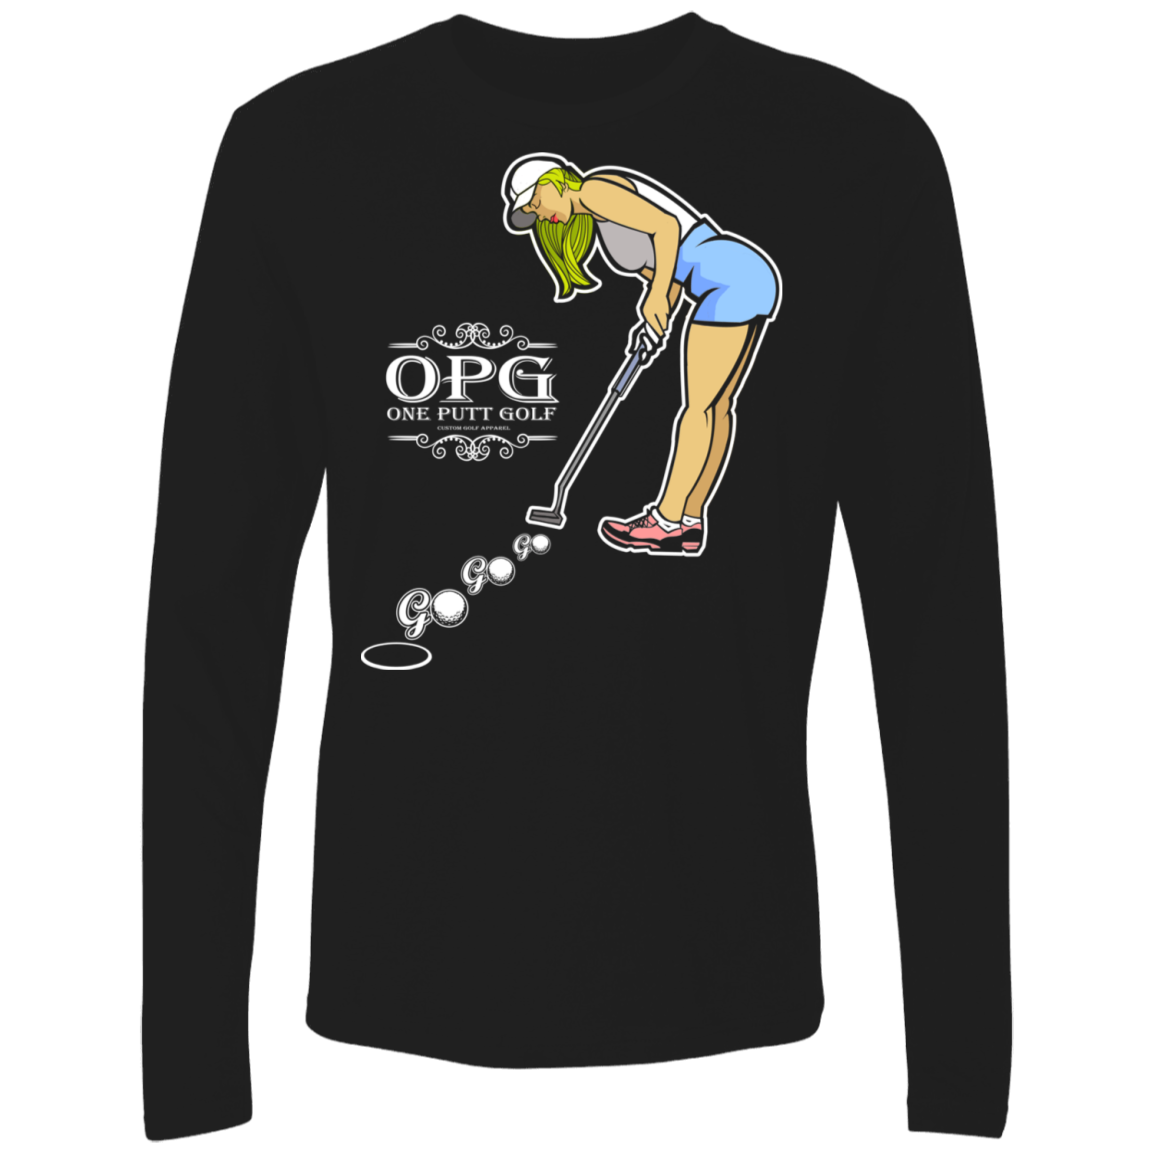 OPG Custom Design #13. Go! Go! Go! 100% Combed Ring-Spun Ultra Soft T-Shirt.